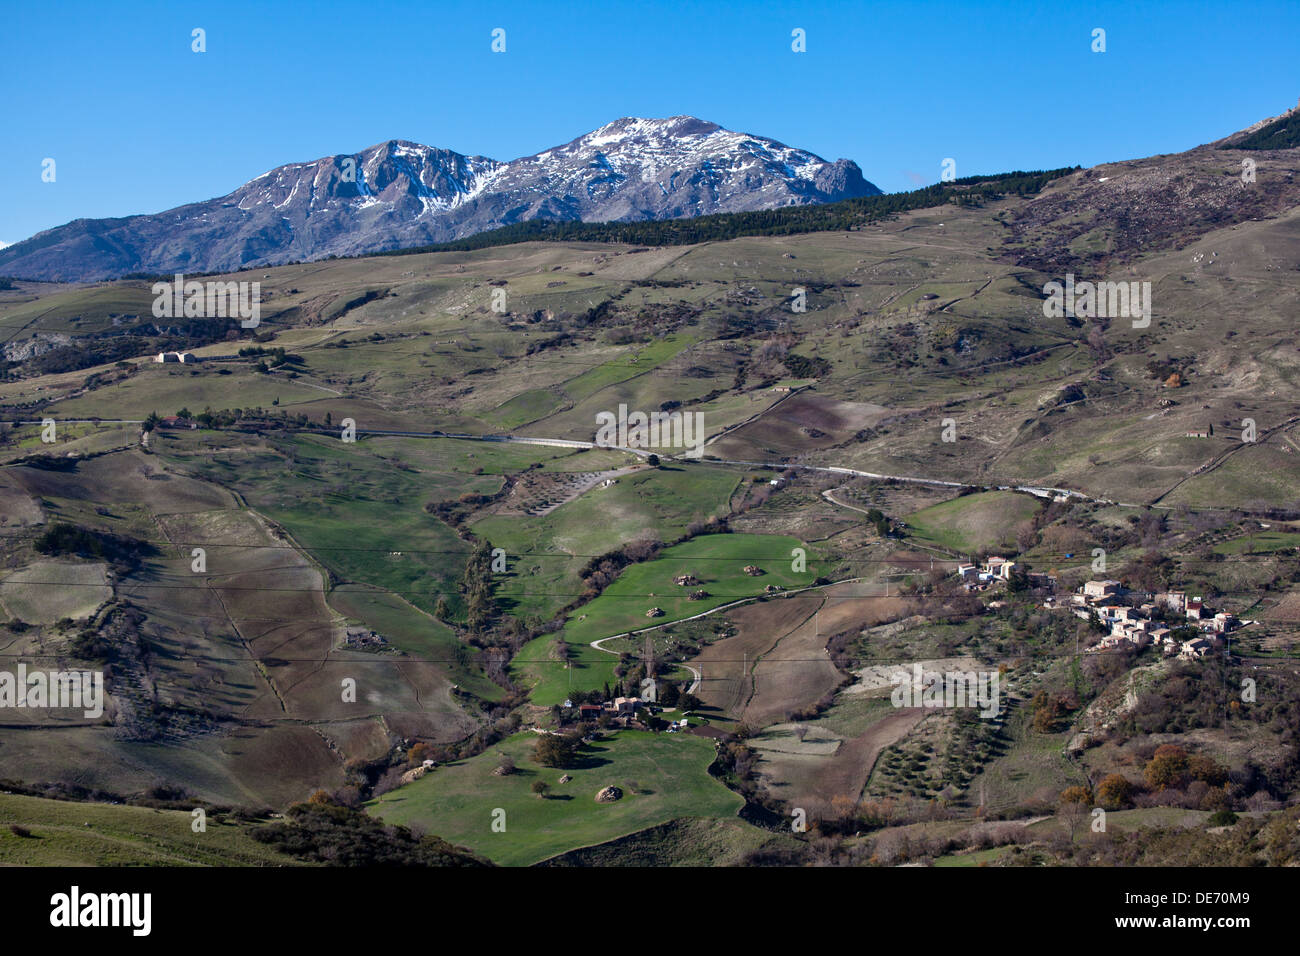 La Modonie montañas en la provincia de Palermo, Sicilia. Foto de stock